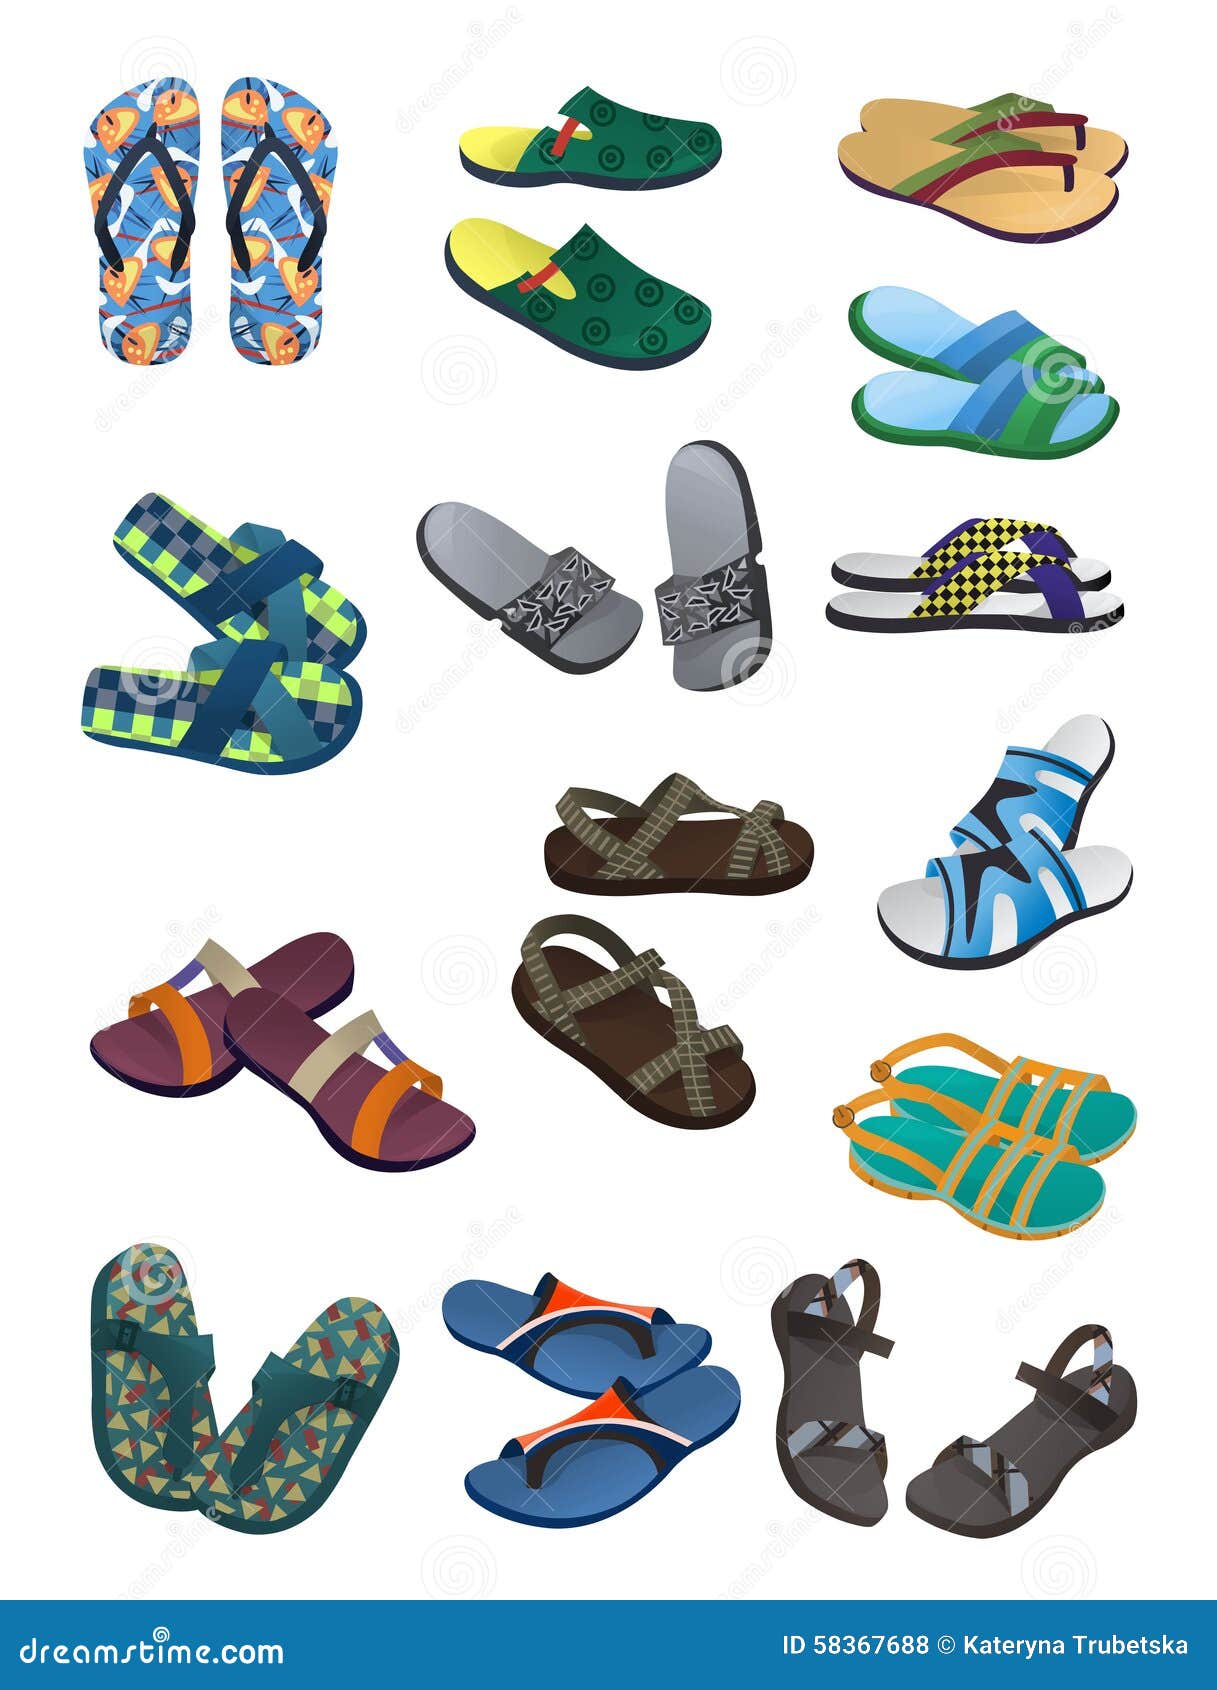 men's flip flops and sandals